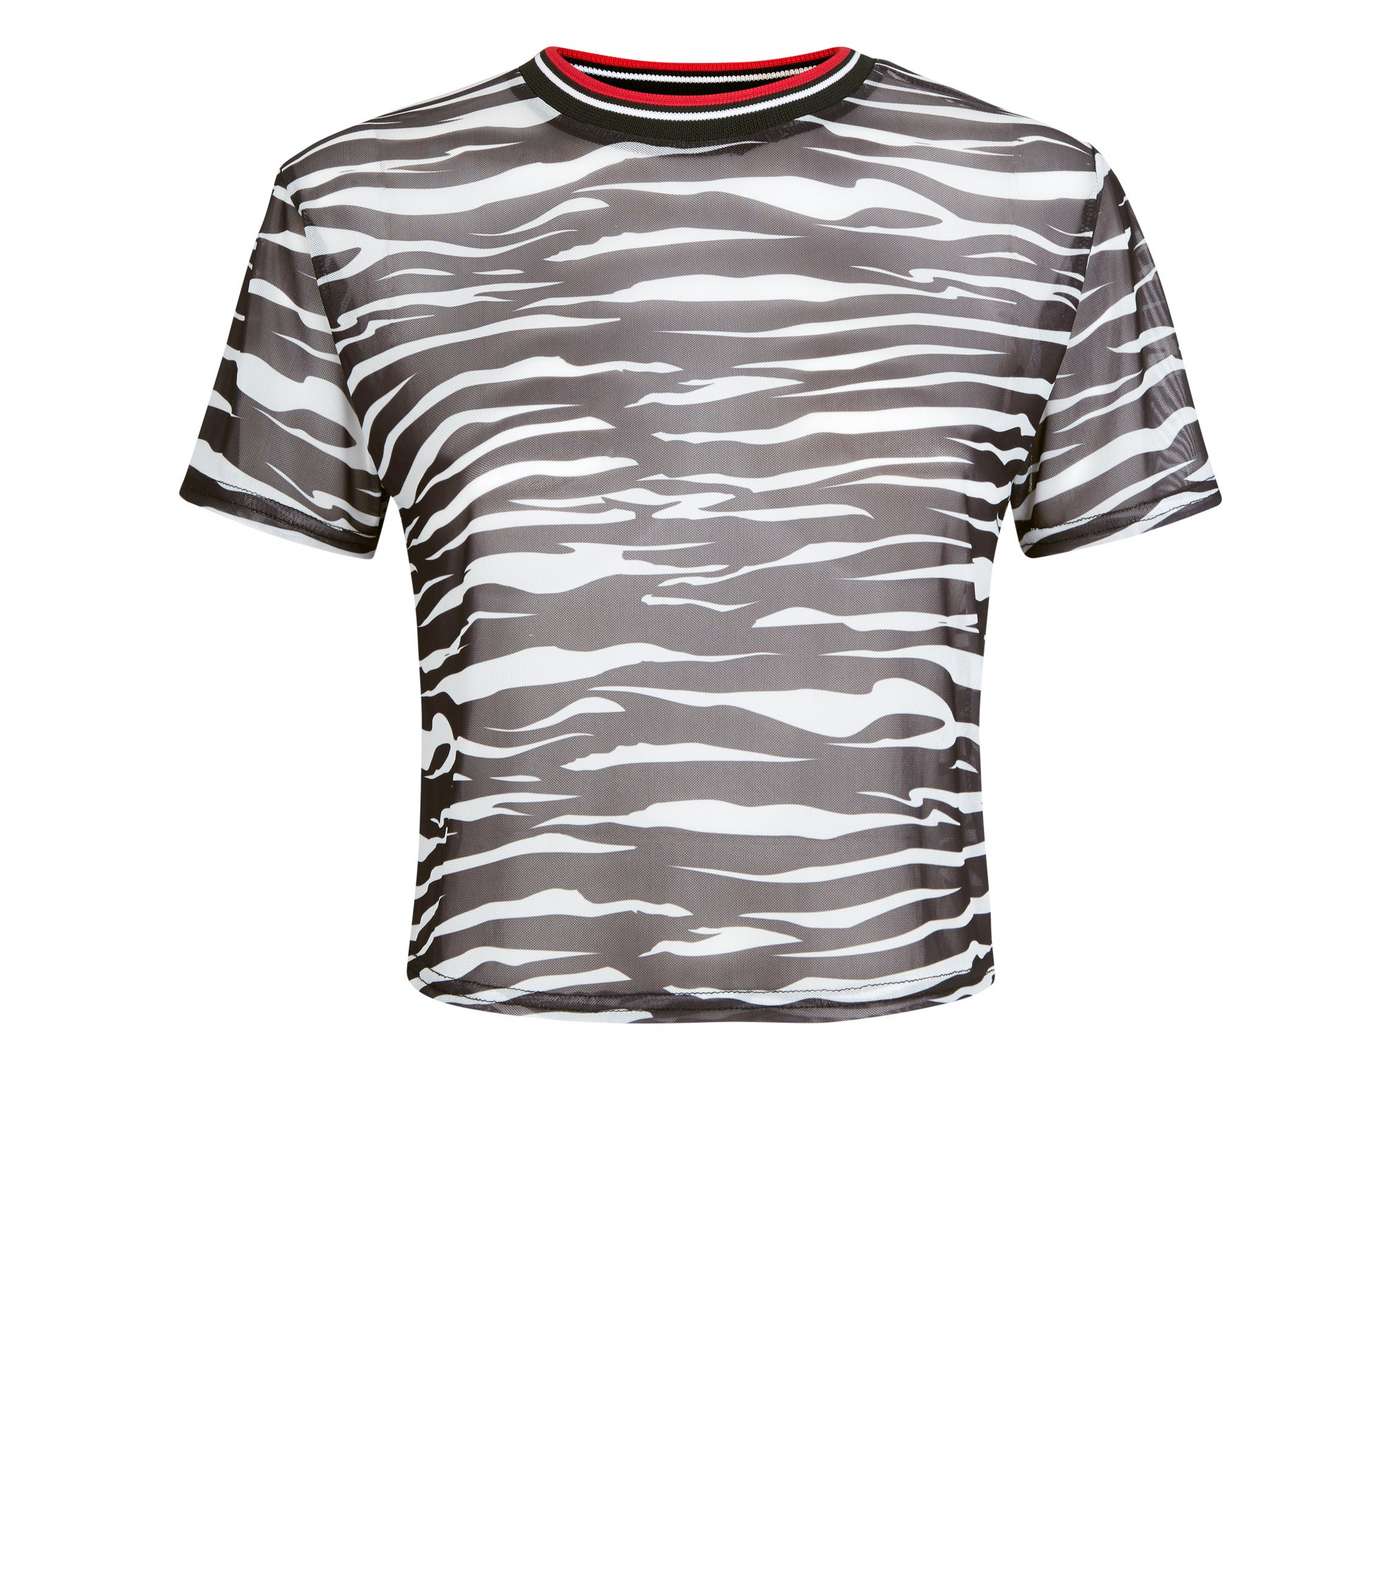 Carpe Diem Black Zebra Print Mesh T-Shirt Image 4